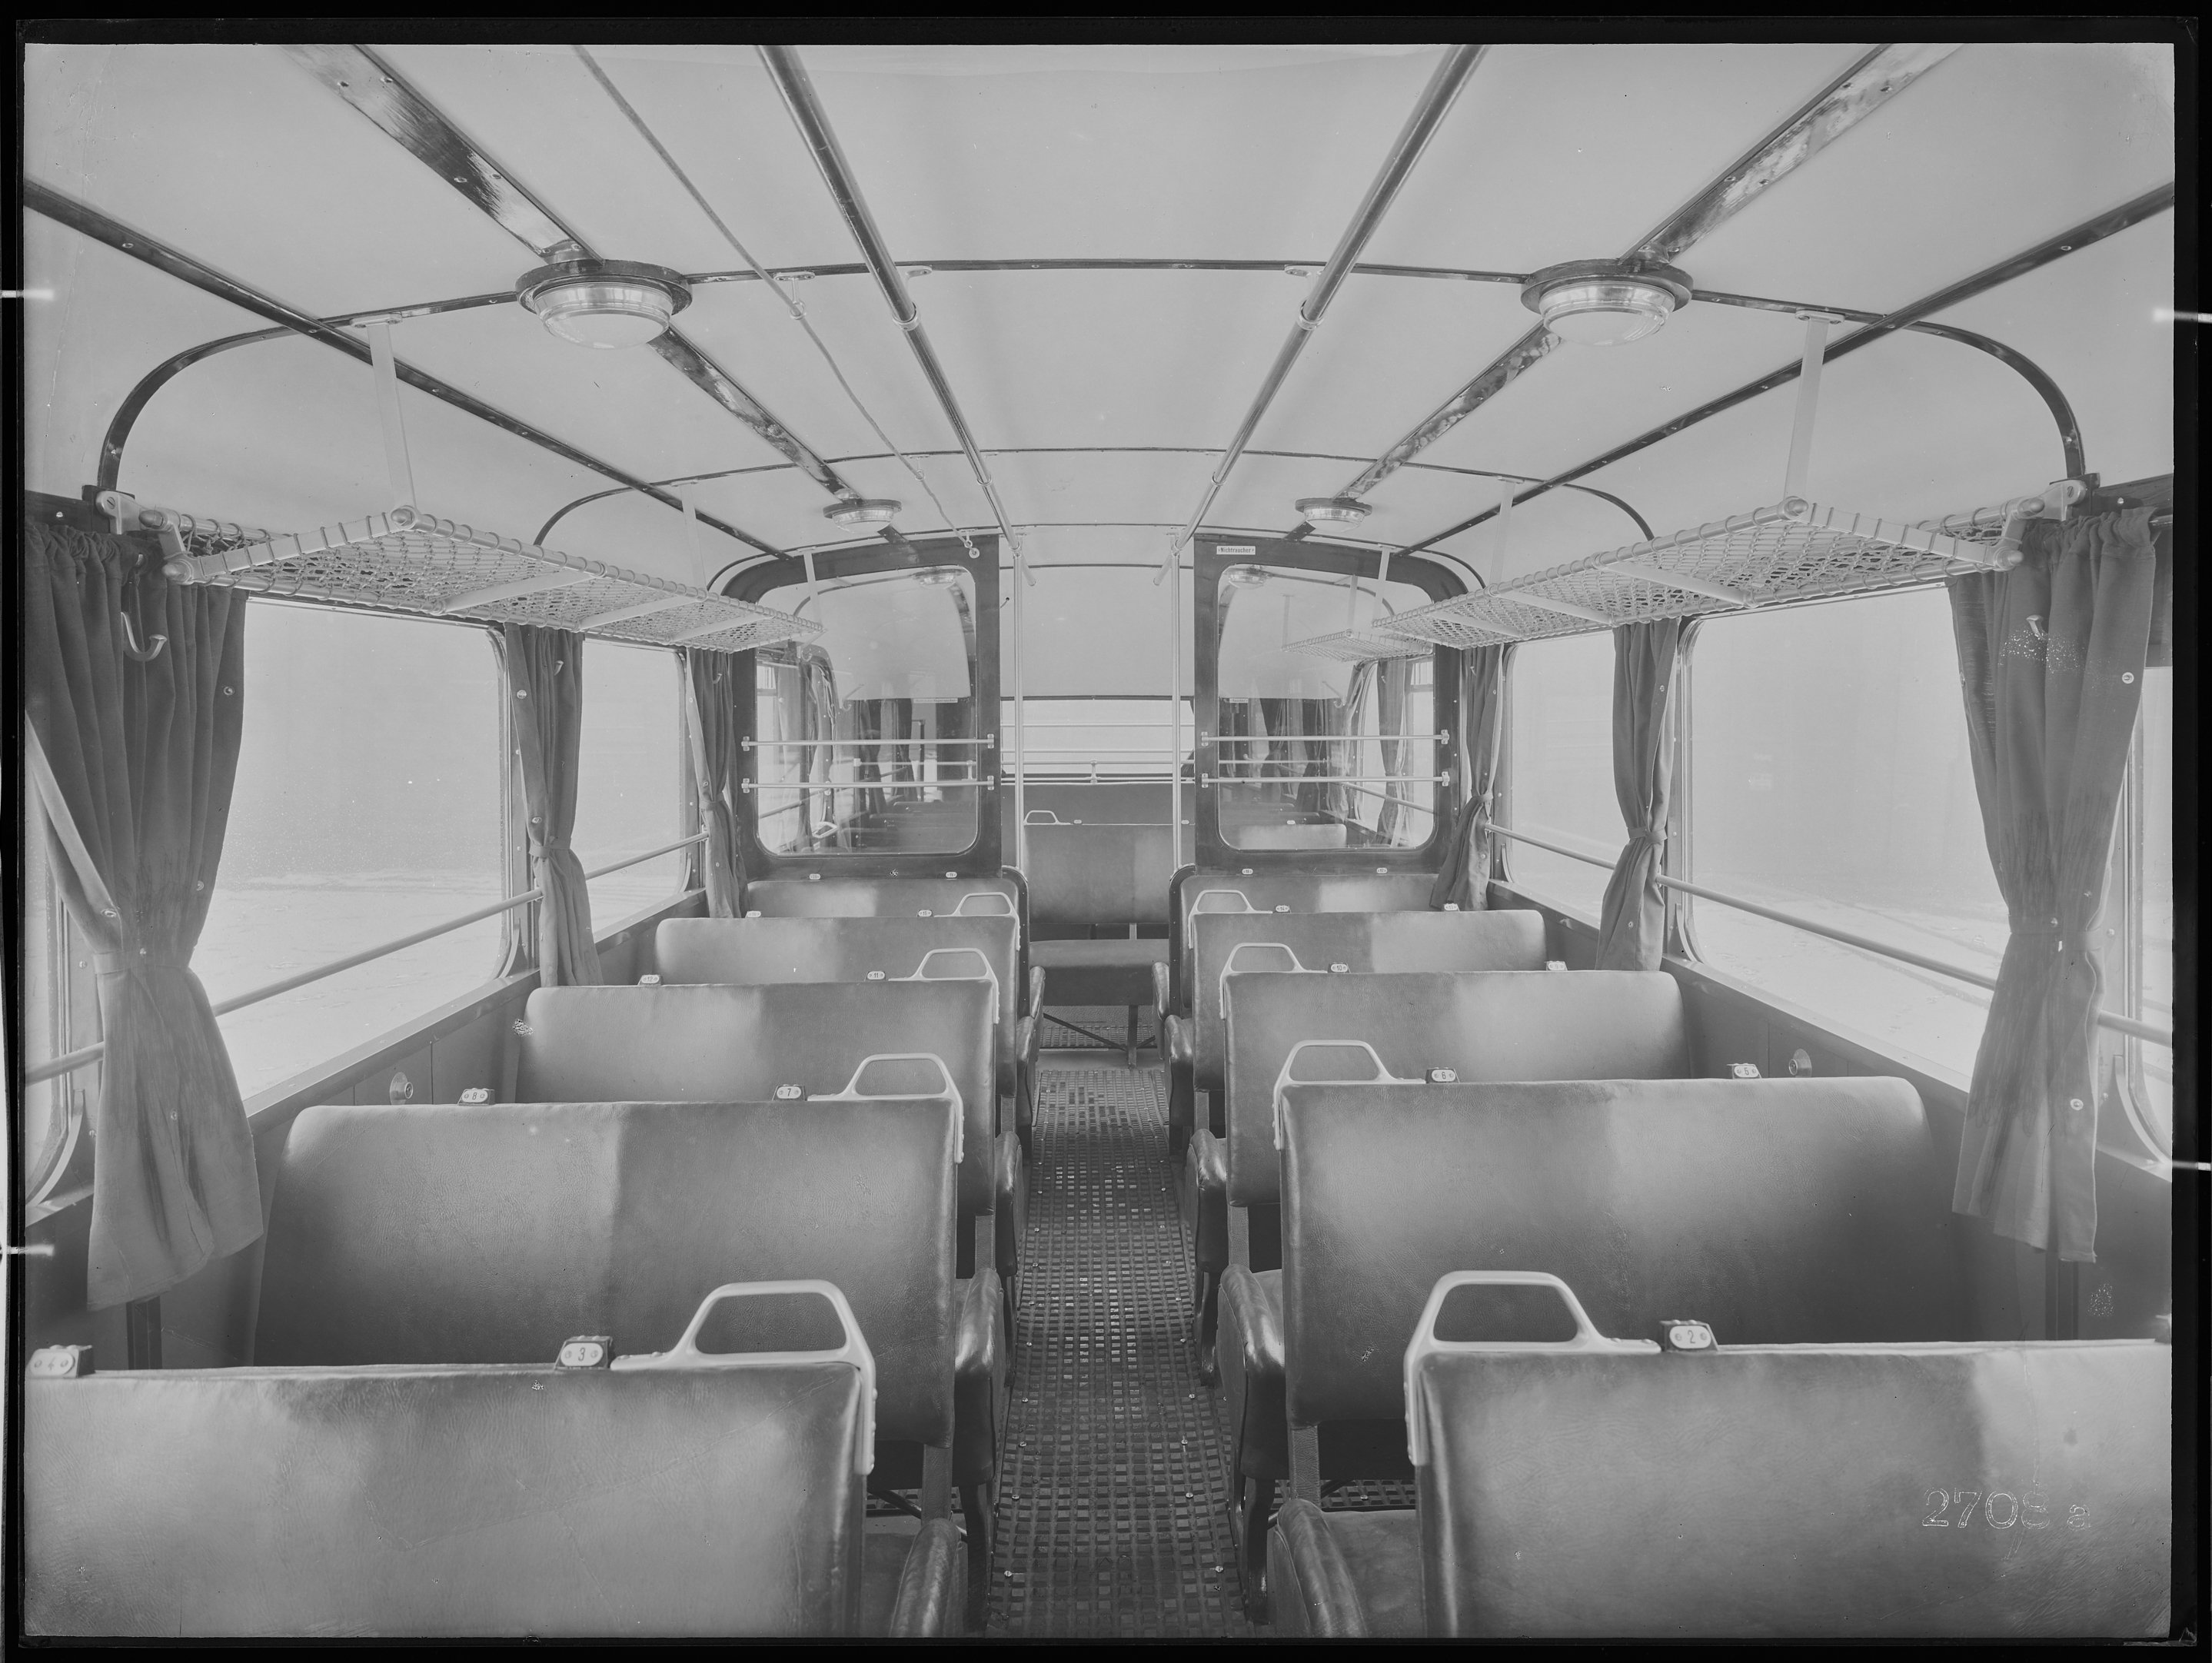 Fotografie: zweiachsiger Omnibus mit Aufbauten (Innenansicht), Fahrgastraum mit Nichtraucher- und Raucherabteil, 1937. Deutsche Reichspost (Verkehrsmuseum Dresden CC BY-NC-SA)